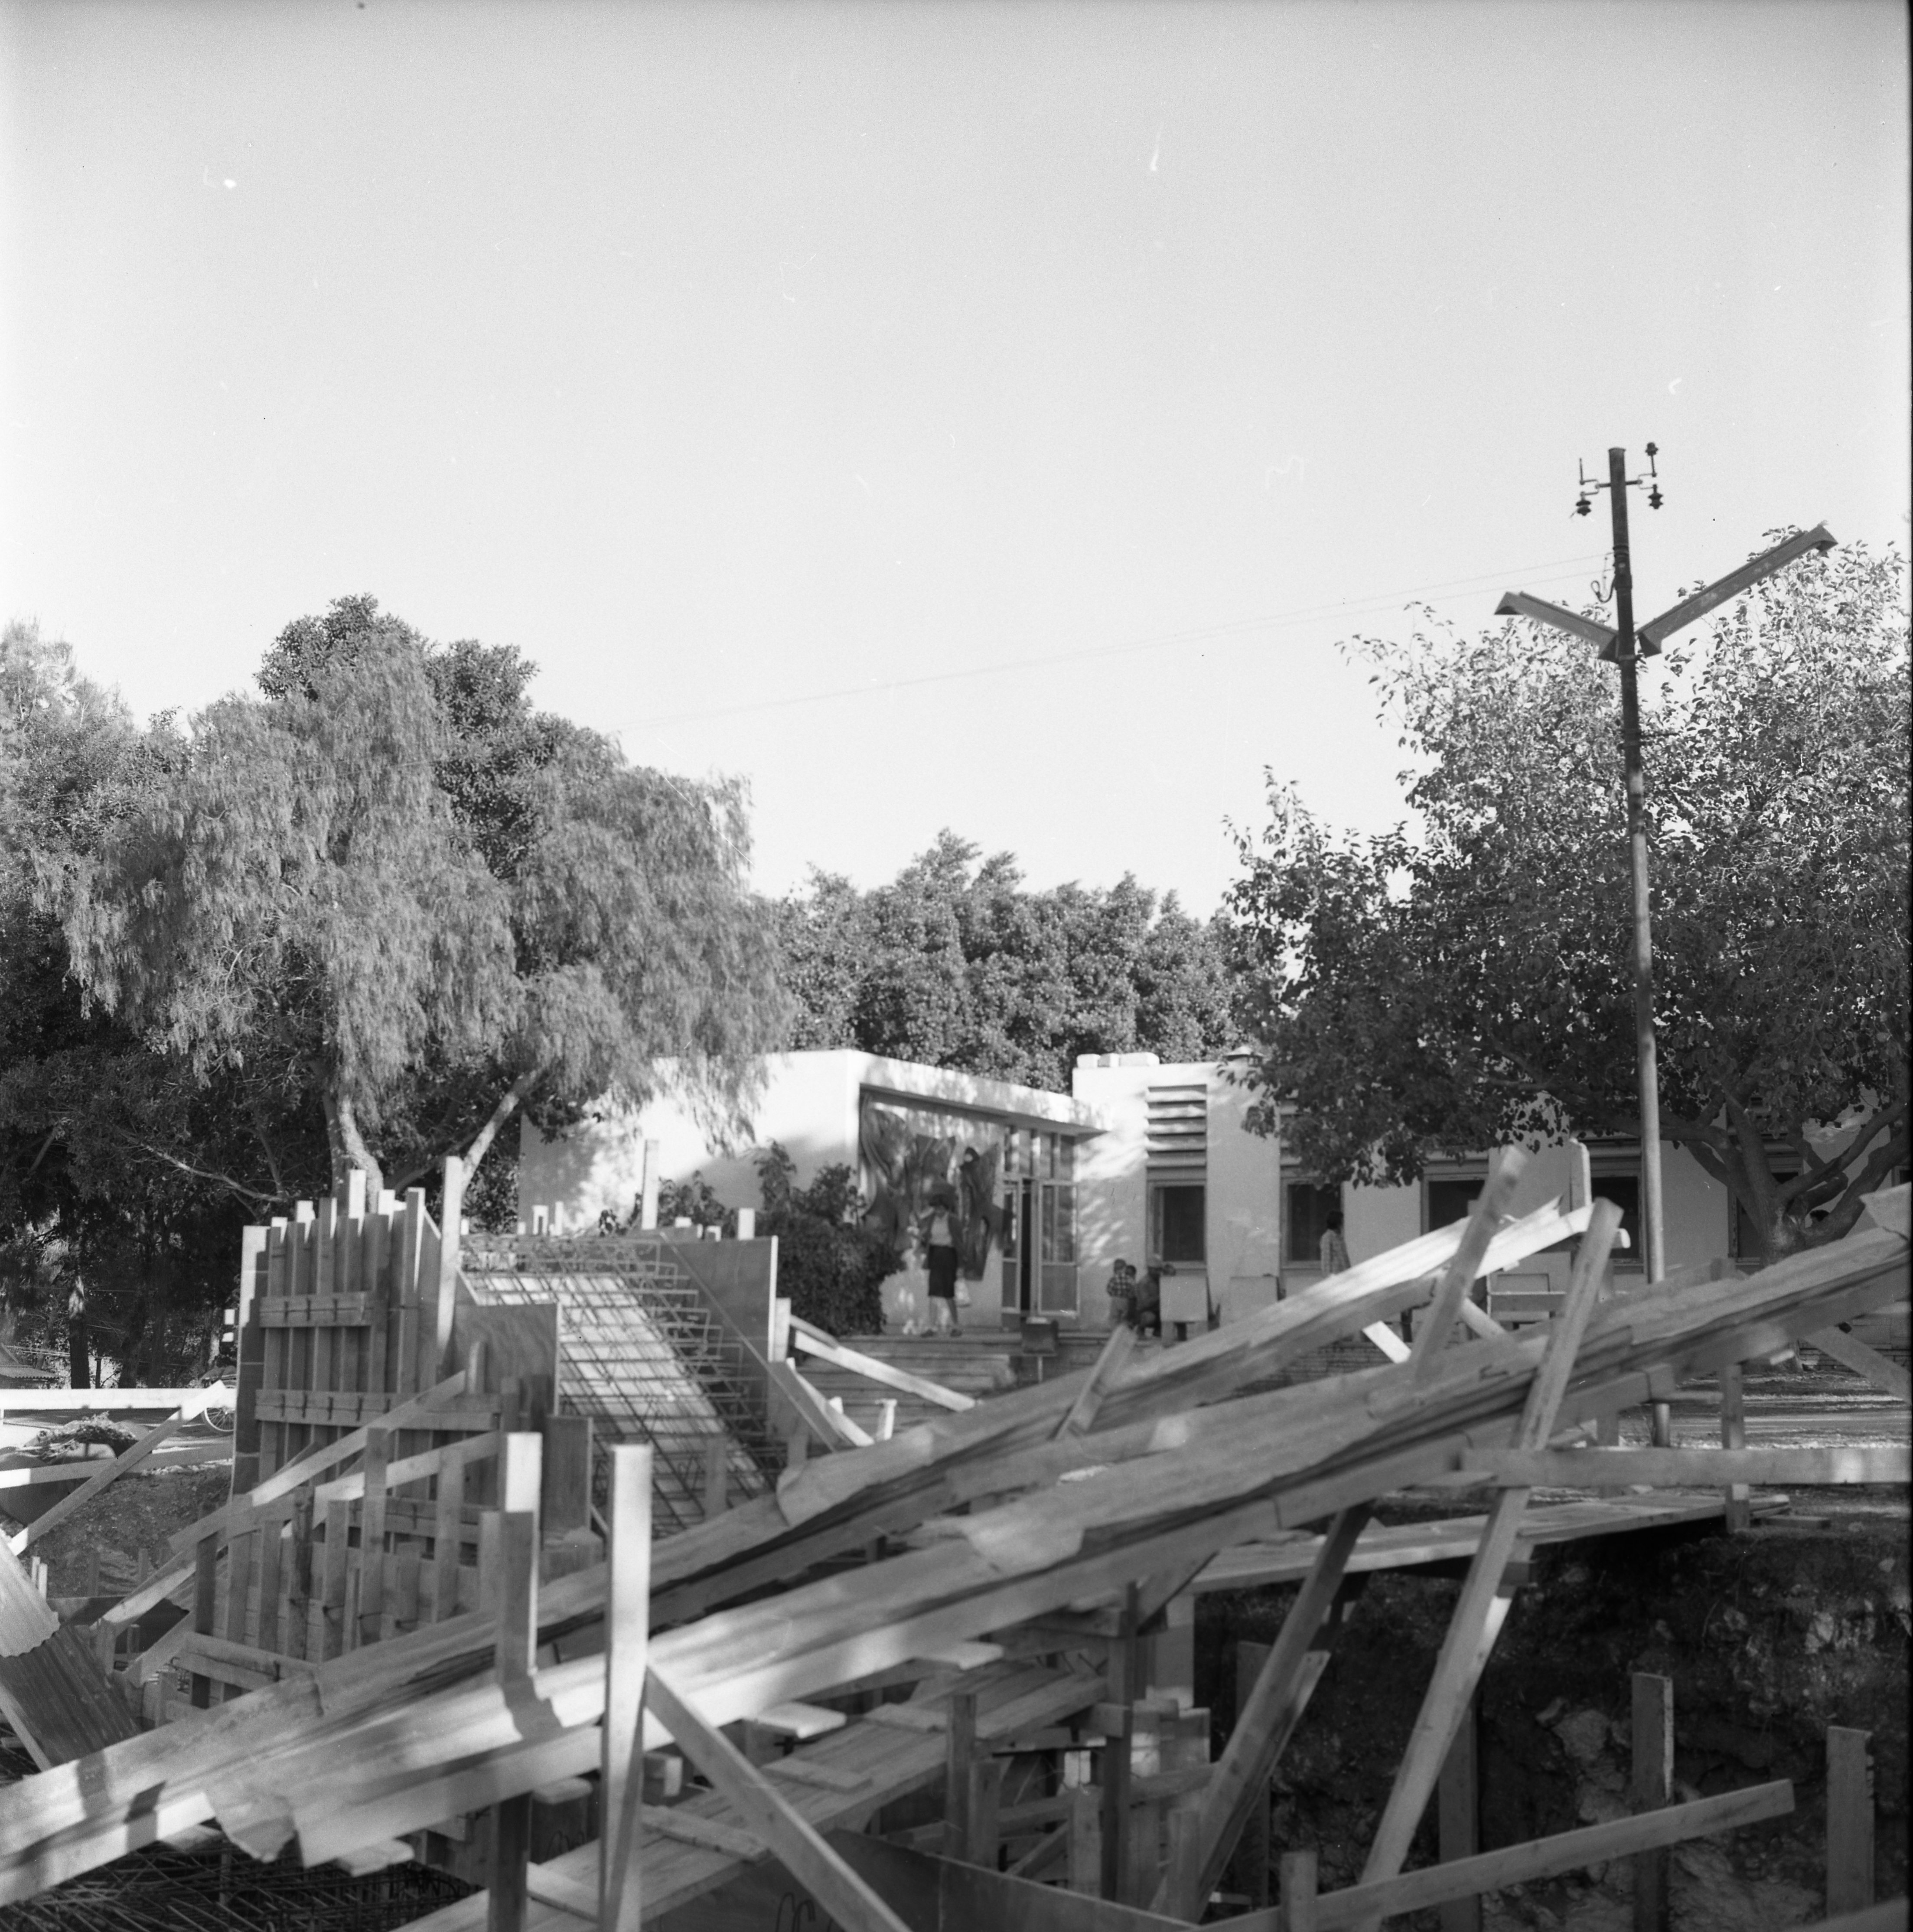  בניית מקלט, נובמבר; 1969